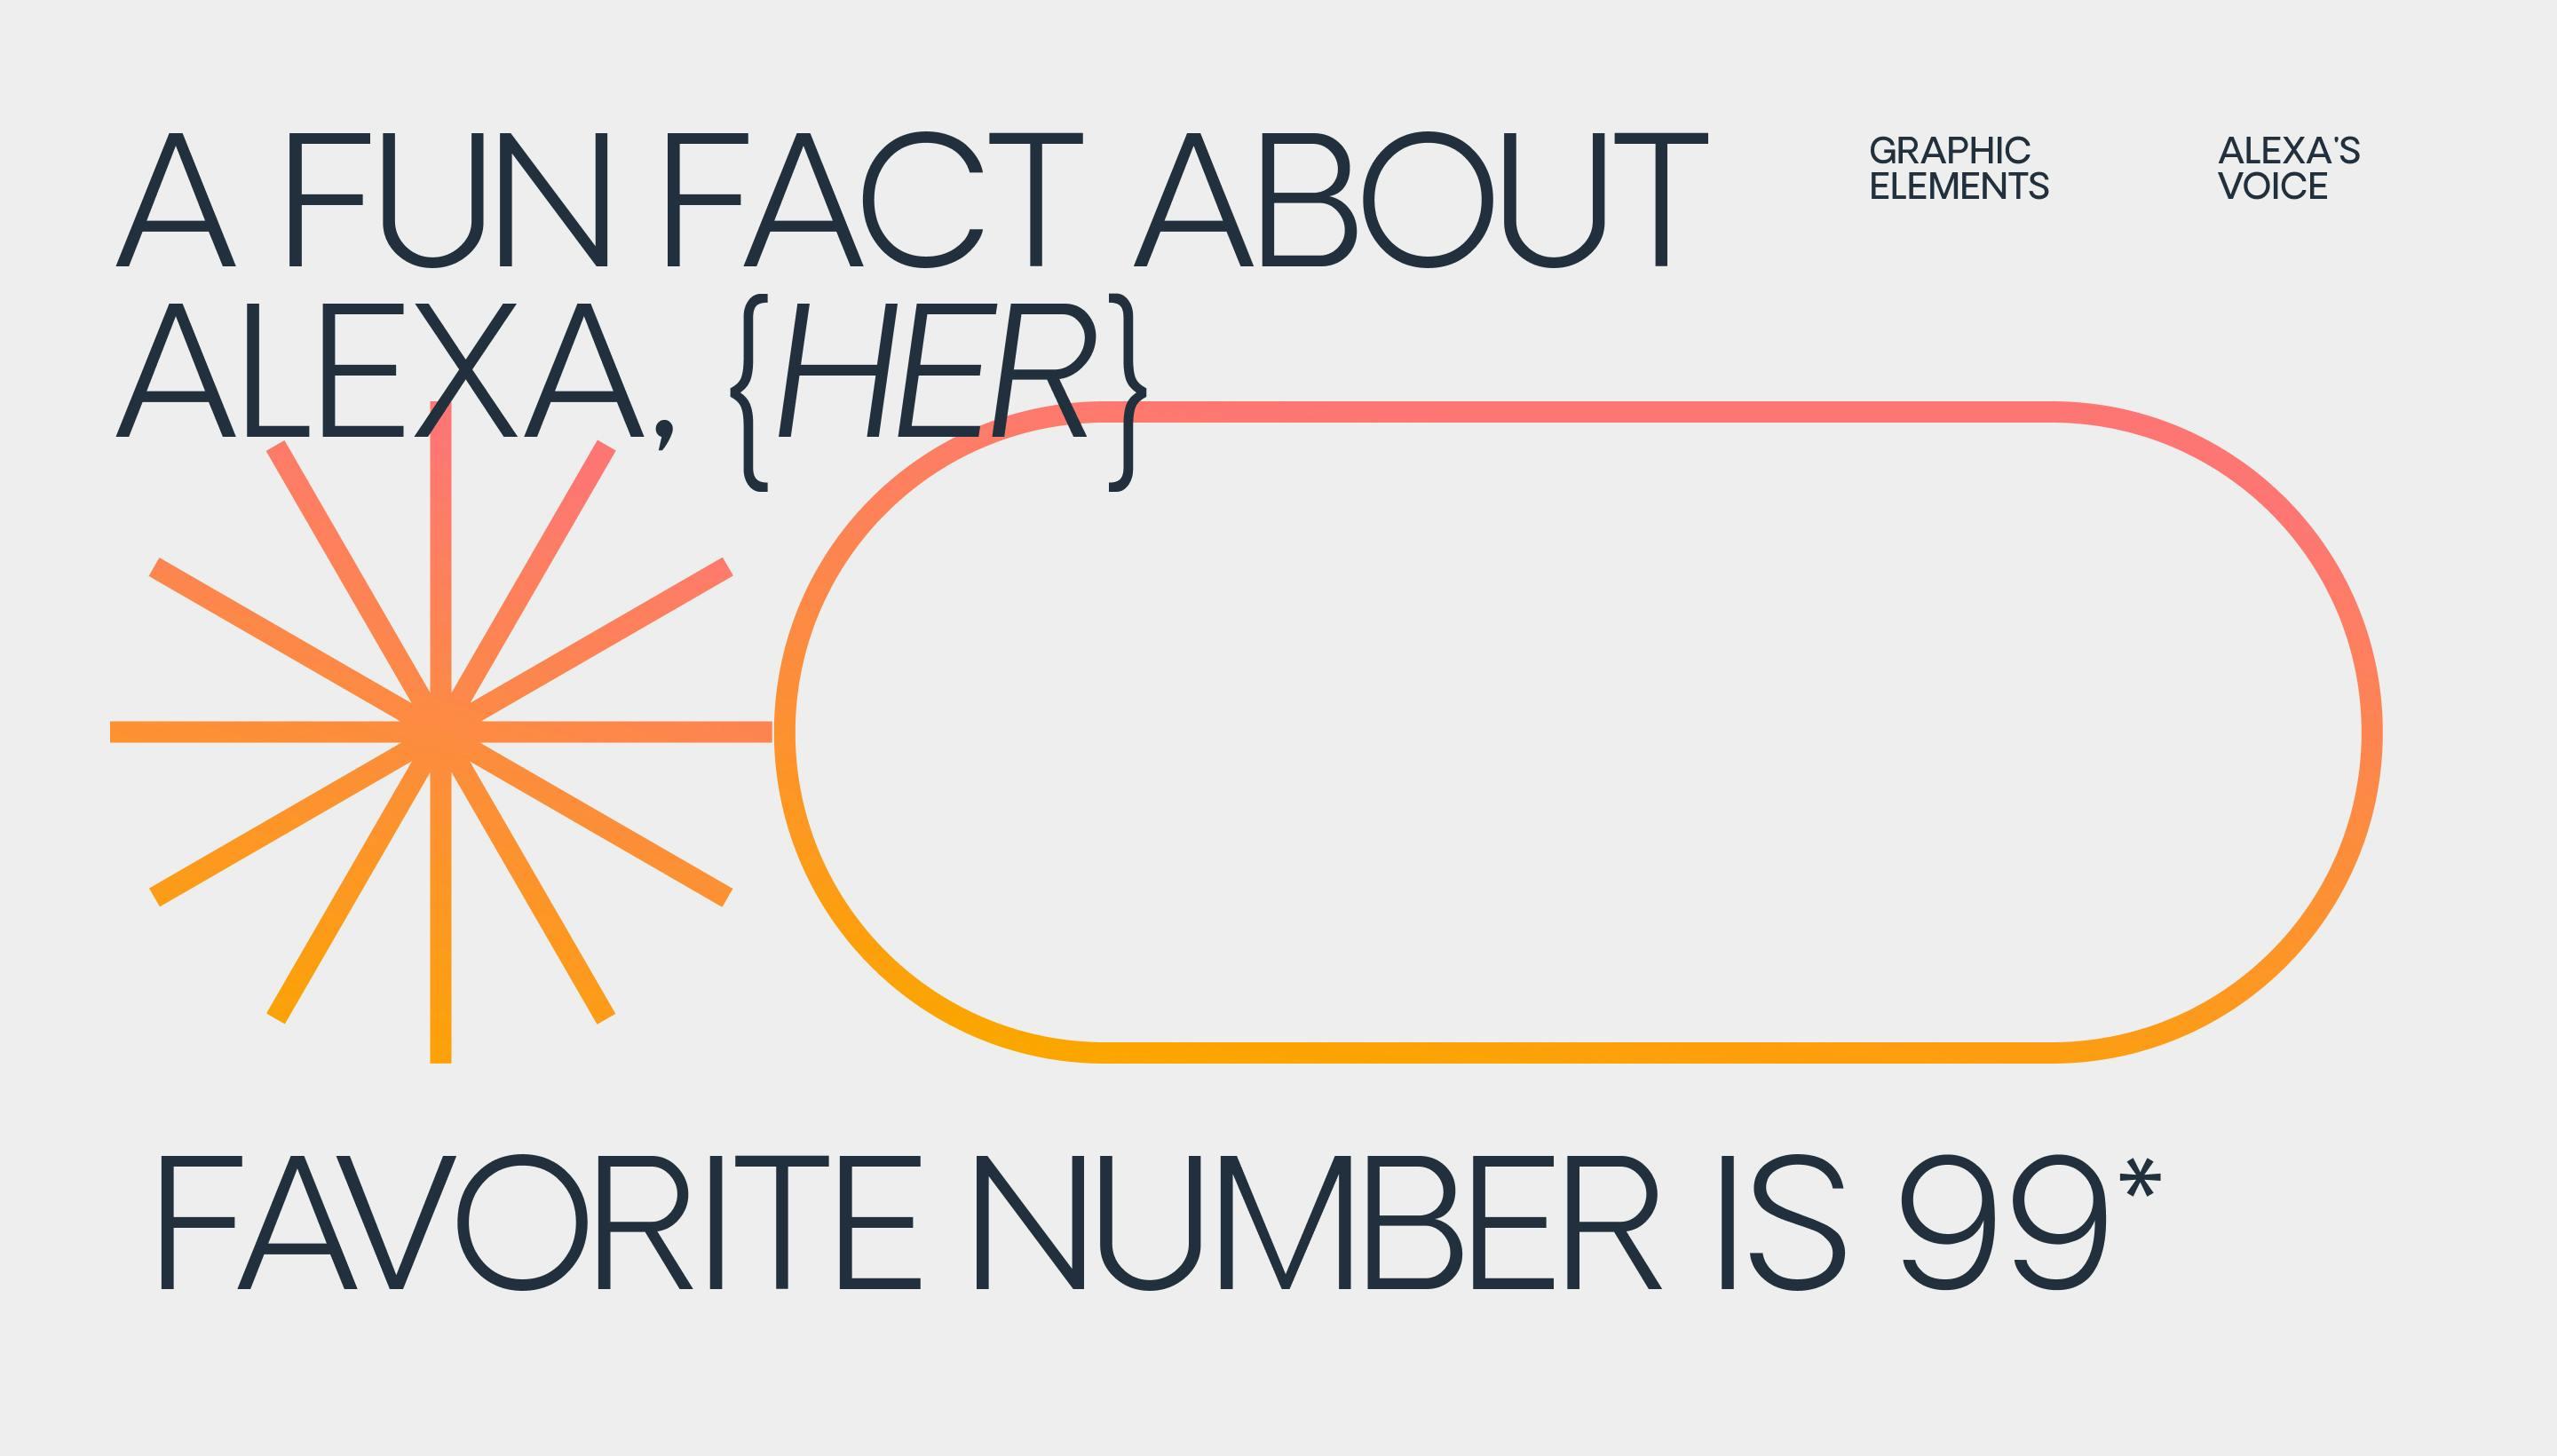 A fun fact about Alexa